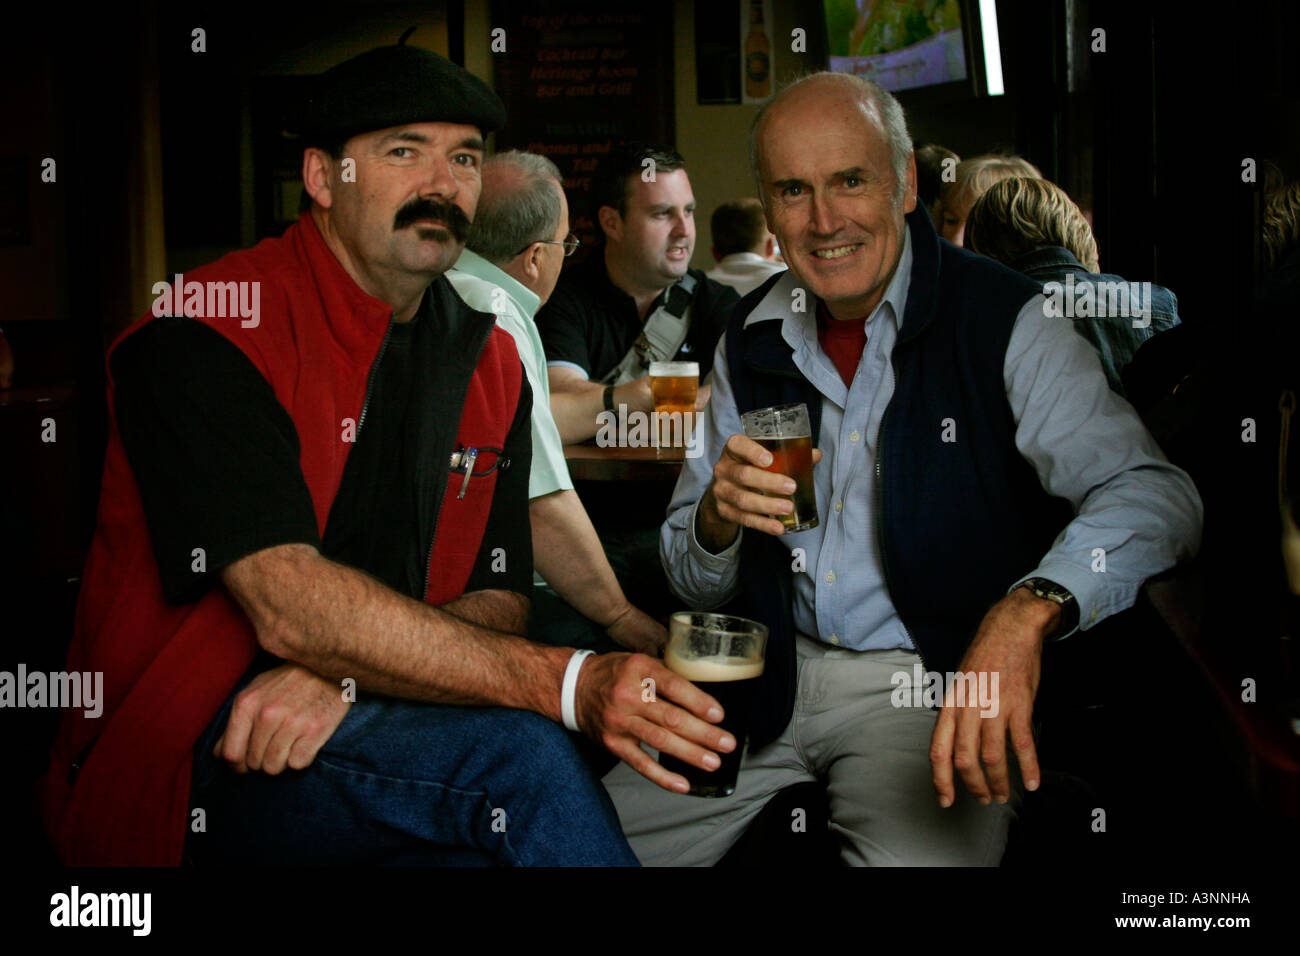 Les hommes de prendre un verre dans un pub dans les rochers à Sydney Australie Banque D'Images